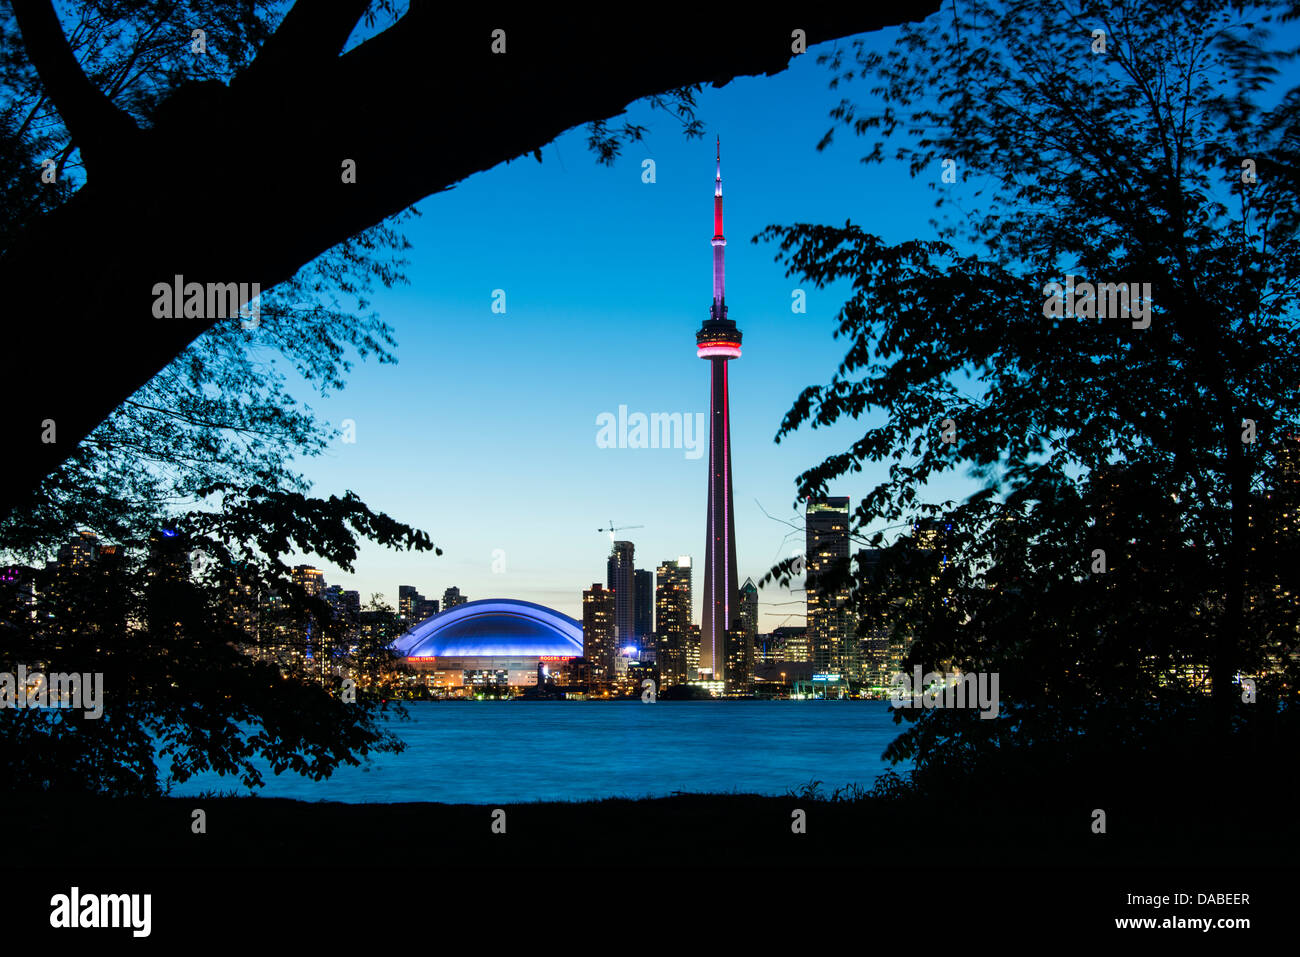 El horizonte de la ciudad al atardecer desde cerca del centro Island Ferry dock, Toronto Island Park, Toronto, Ontario, Canadá. Foto de stock